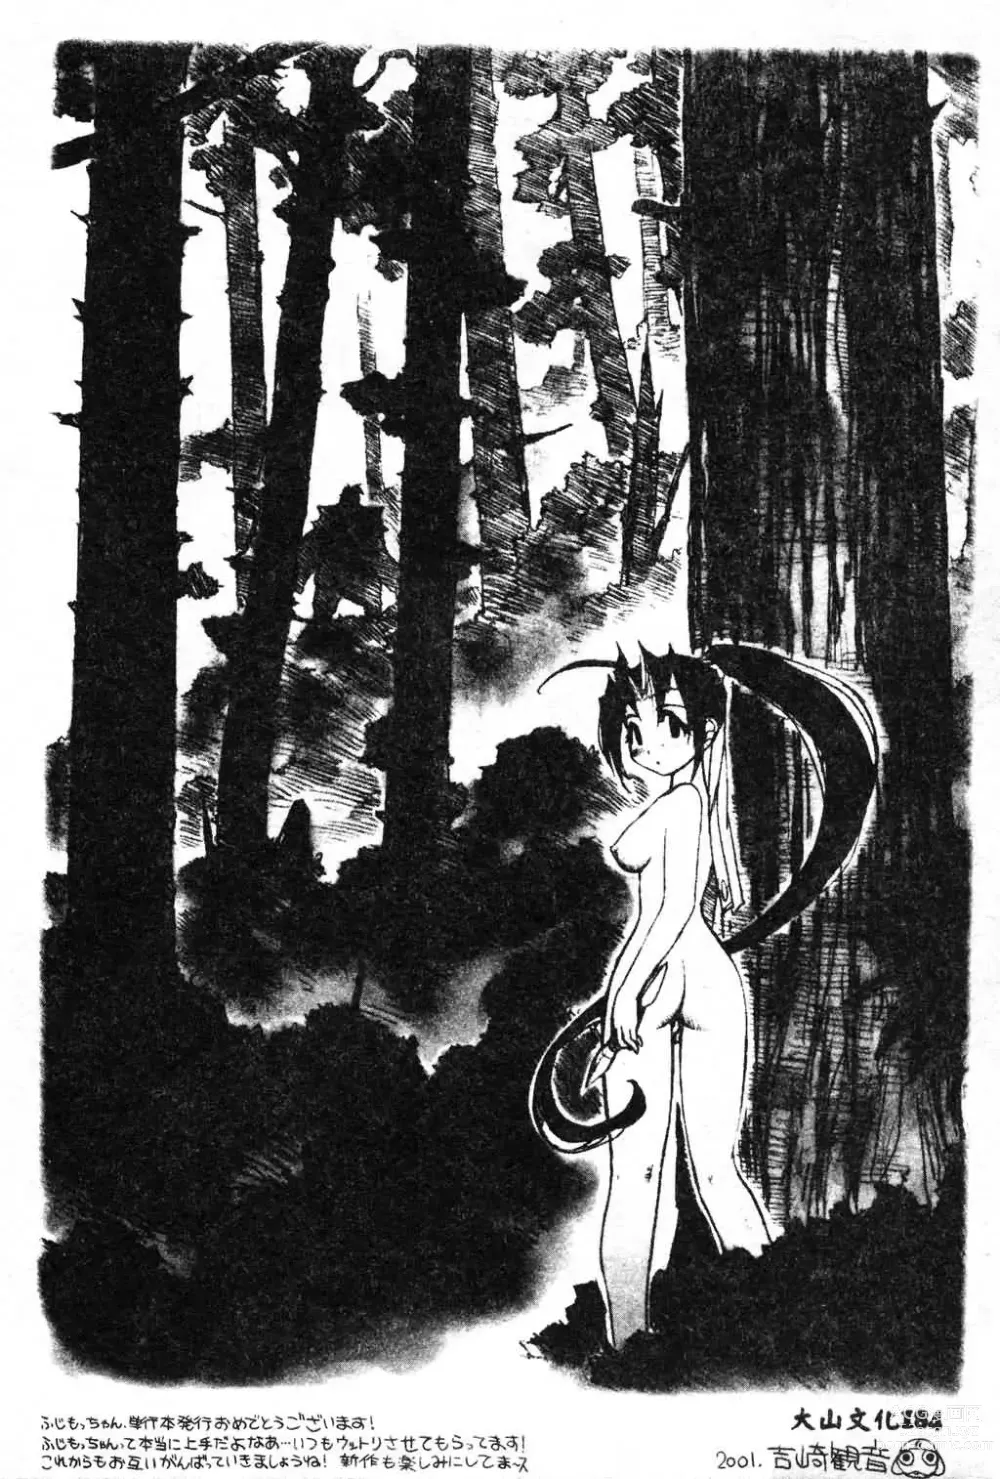 Page 208 of manga Fuusatsu Hyakke